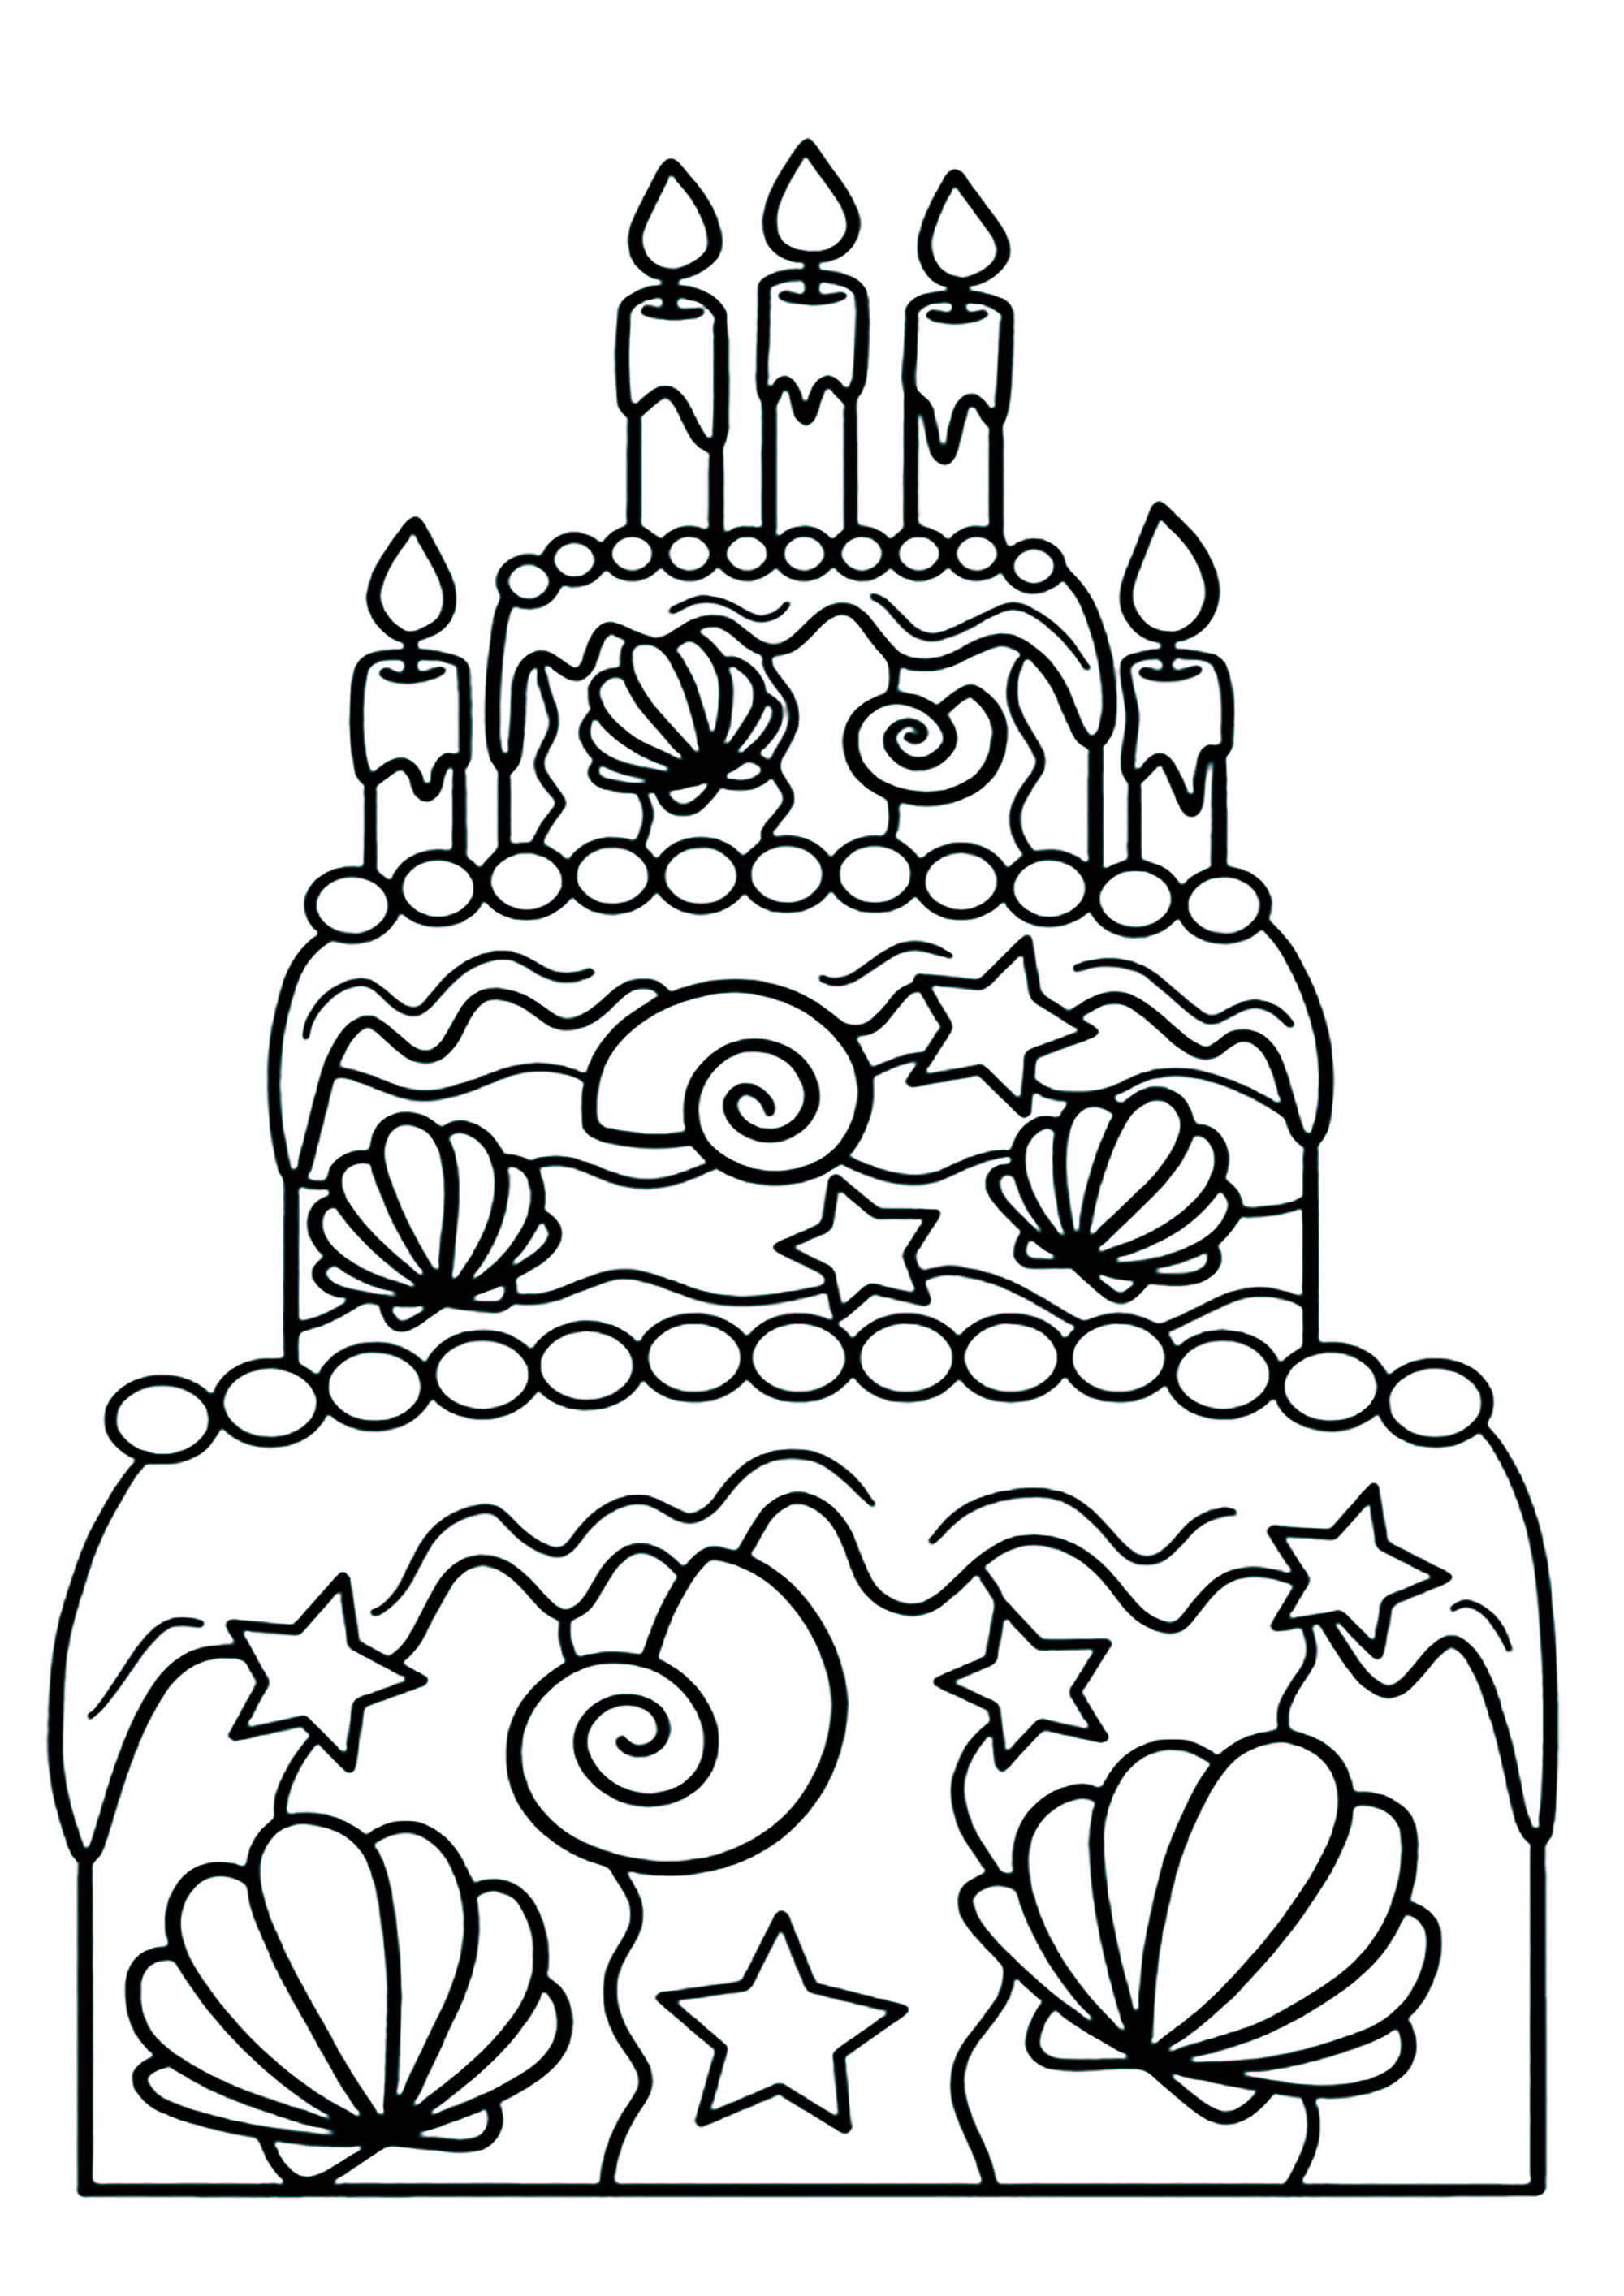 Colorear una tarta de cumpleaños con motivos marinos. Conchas incrustadas en un pastel, ¡qué original!